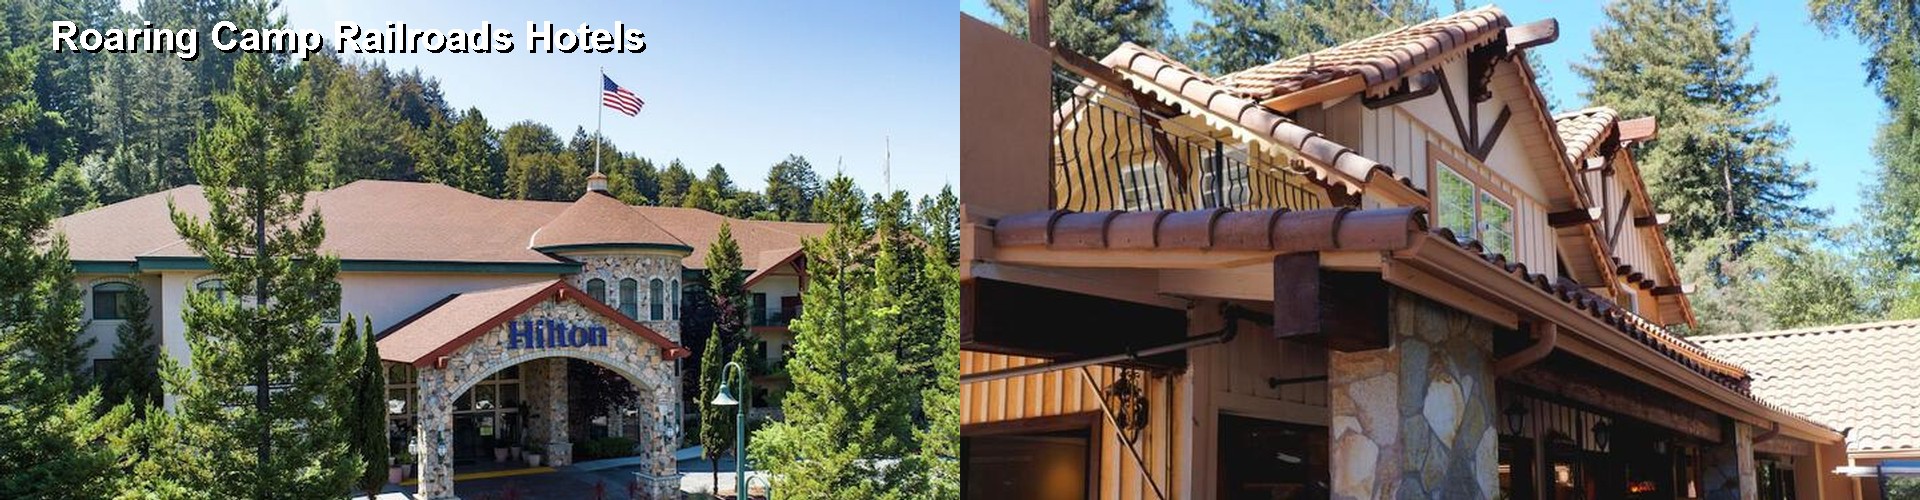 5 Best Hotels near Roaring Camp Railroads